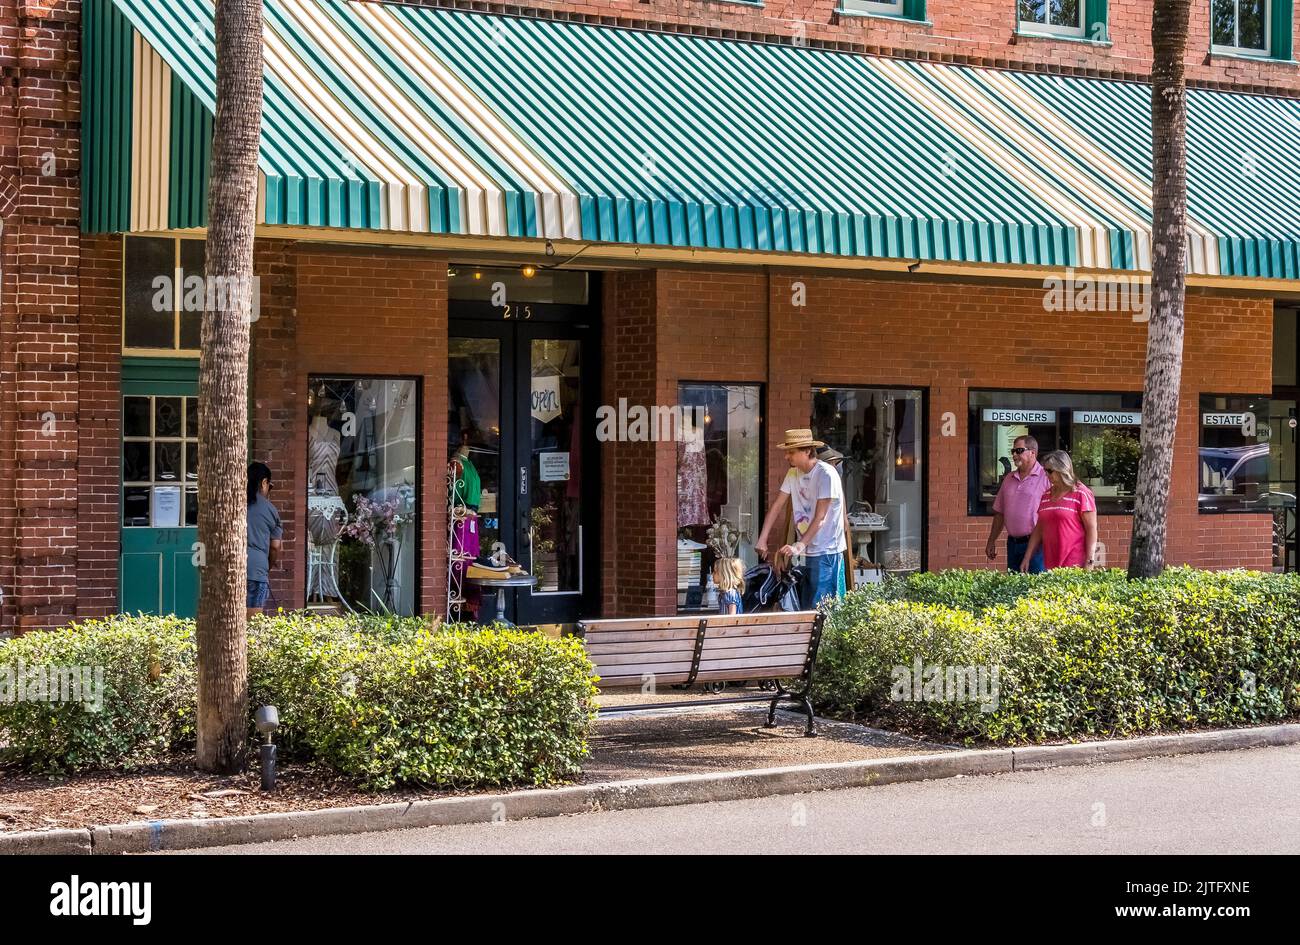 Centro de la calle en el pueblo de Fernandina Beach en Amelia Island Florida EE.UU. Foto de stock